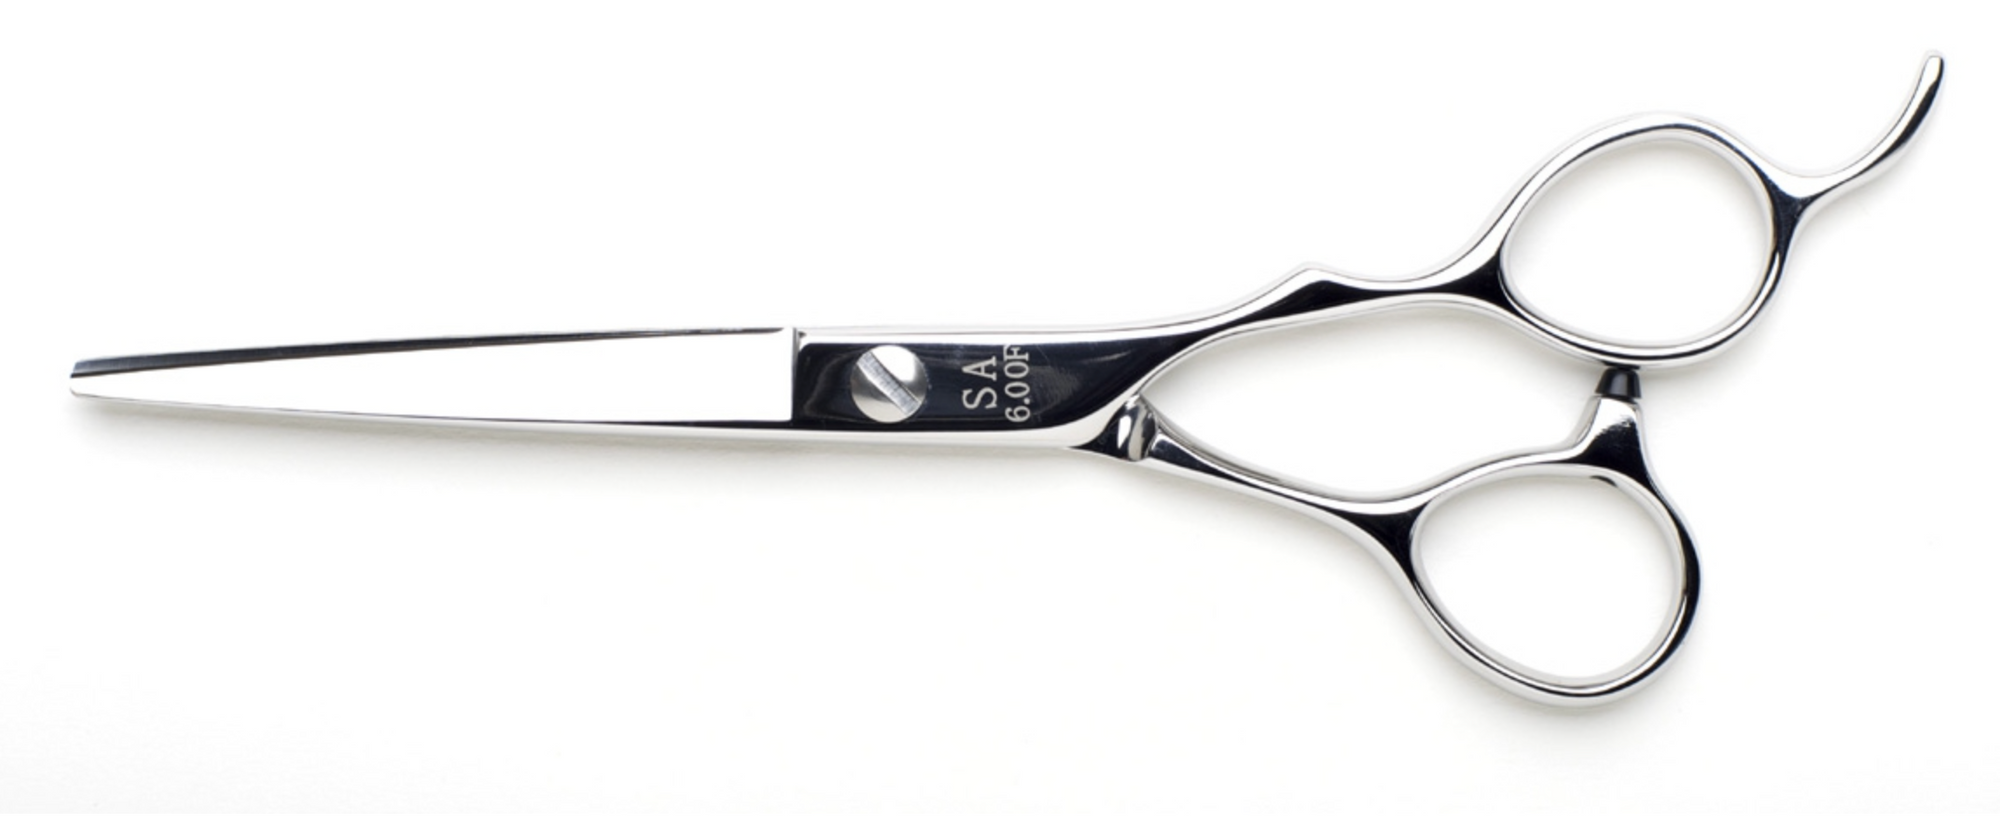 Yasaka SA Cutting Scissor (4859176321085)